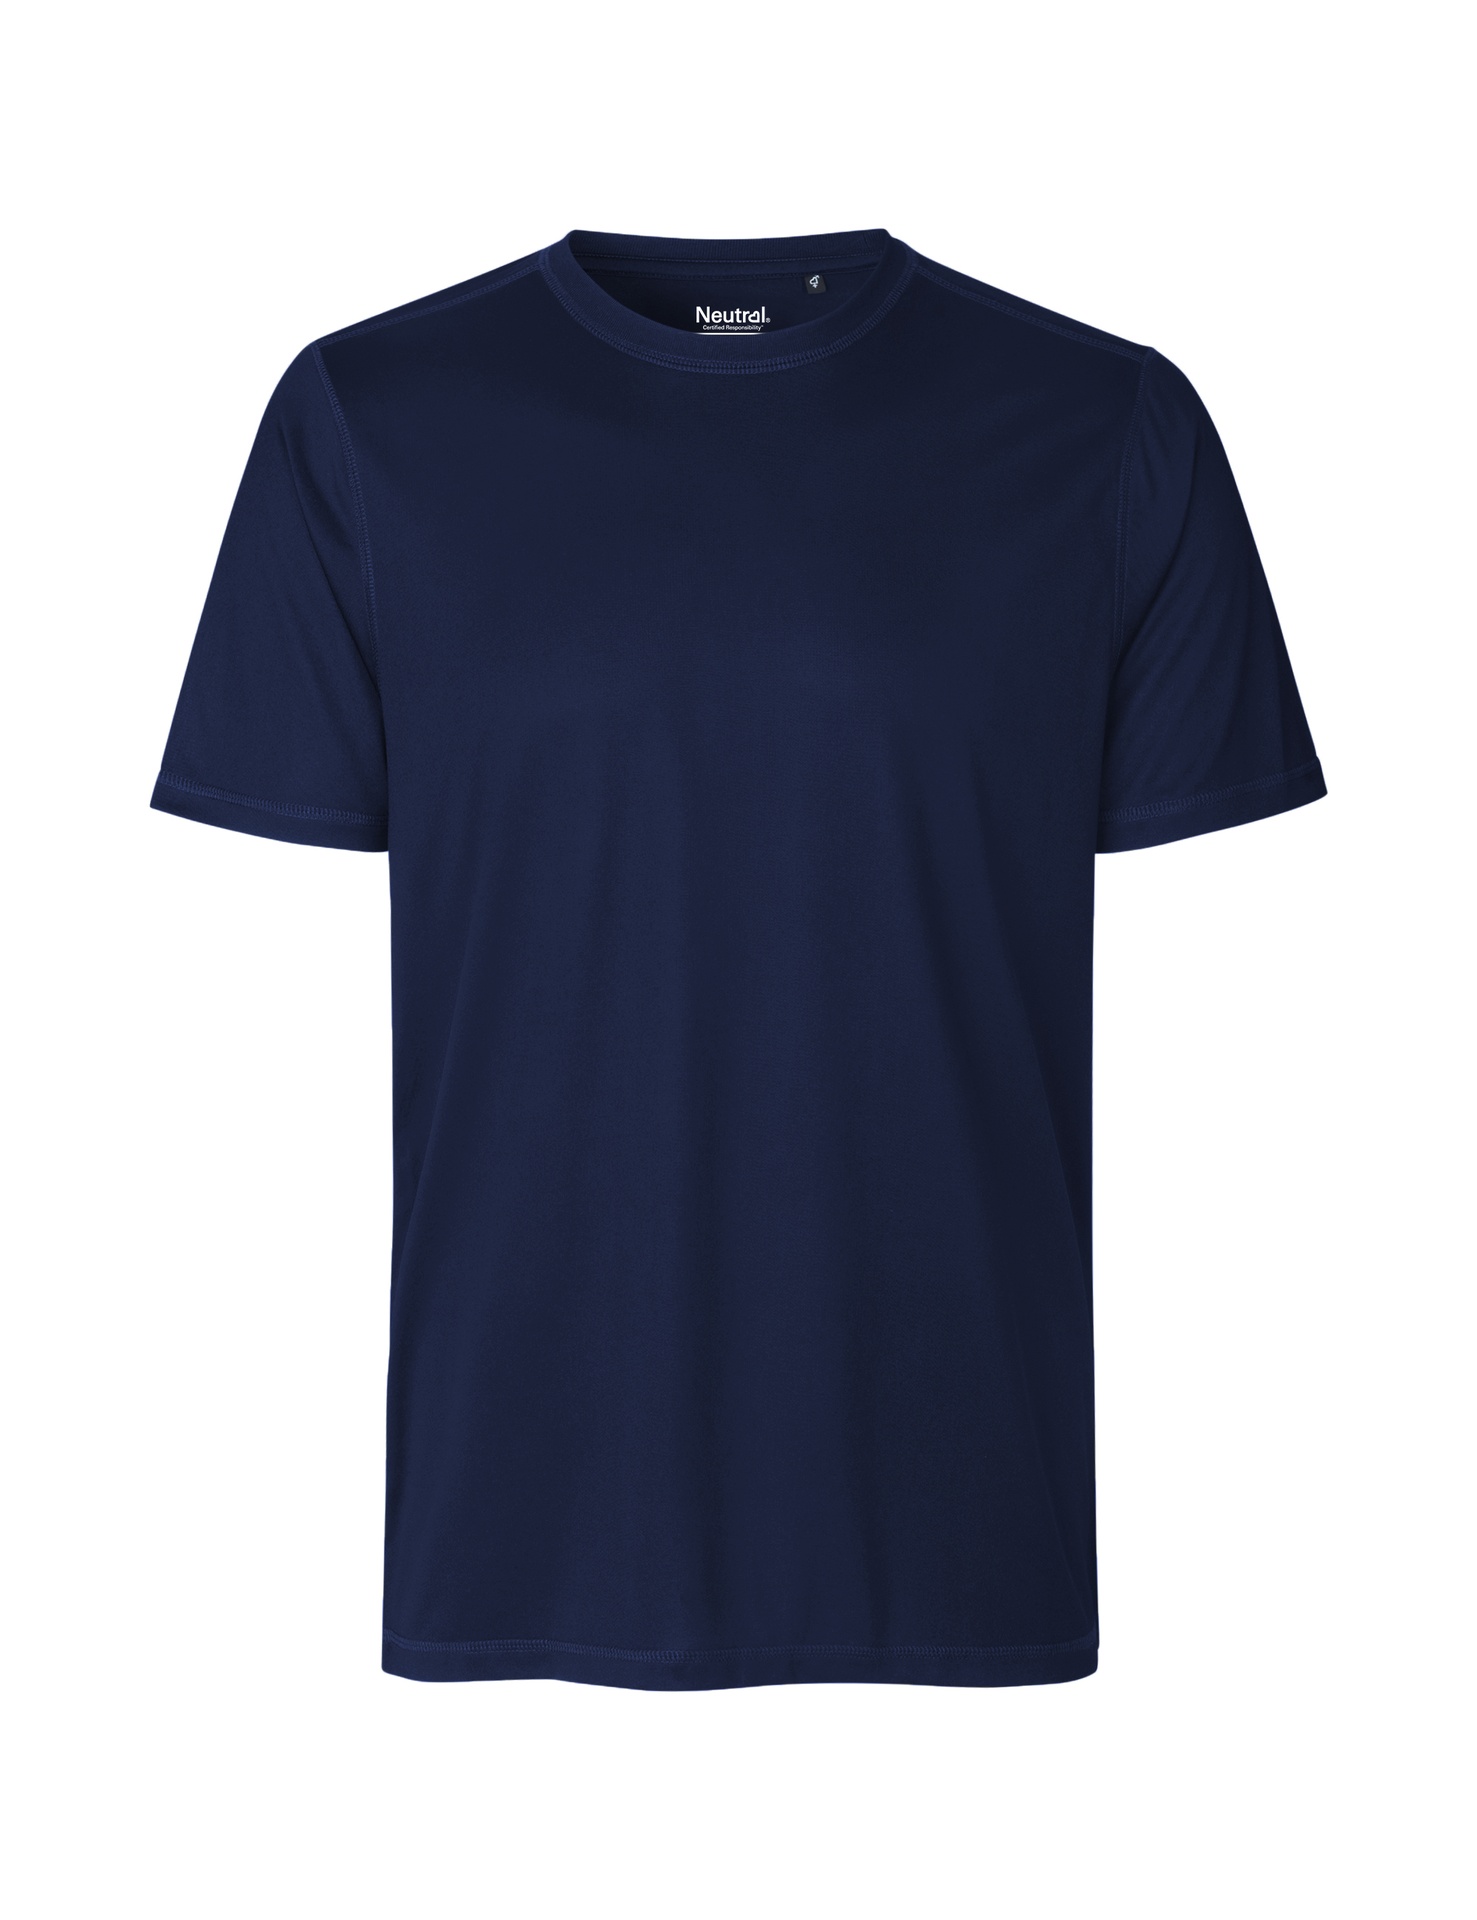 [PR/03764] Recycled Performance T-Shirt (Navy 04, 2XL)